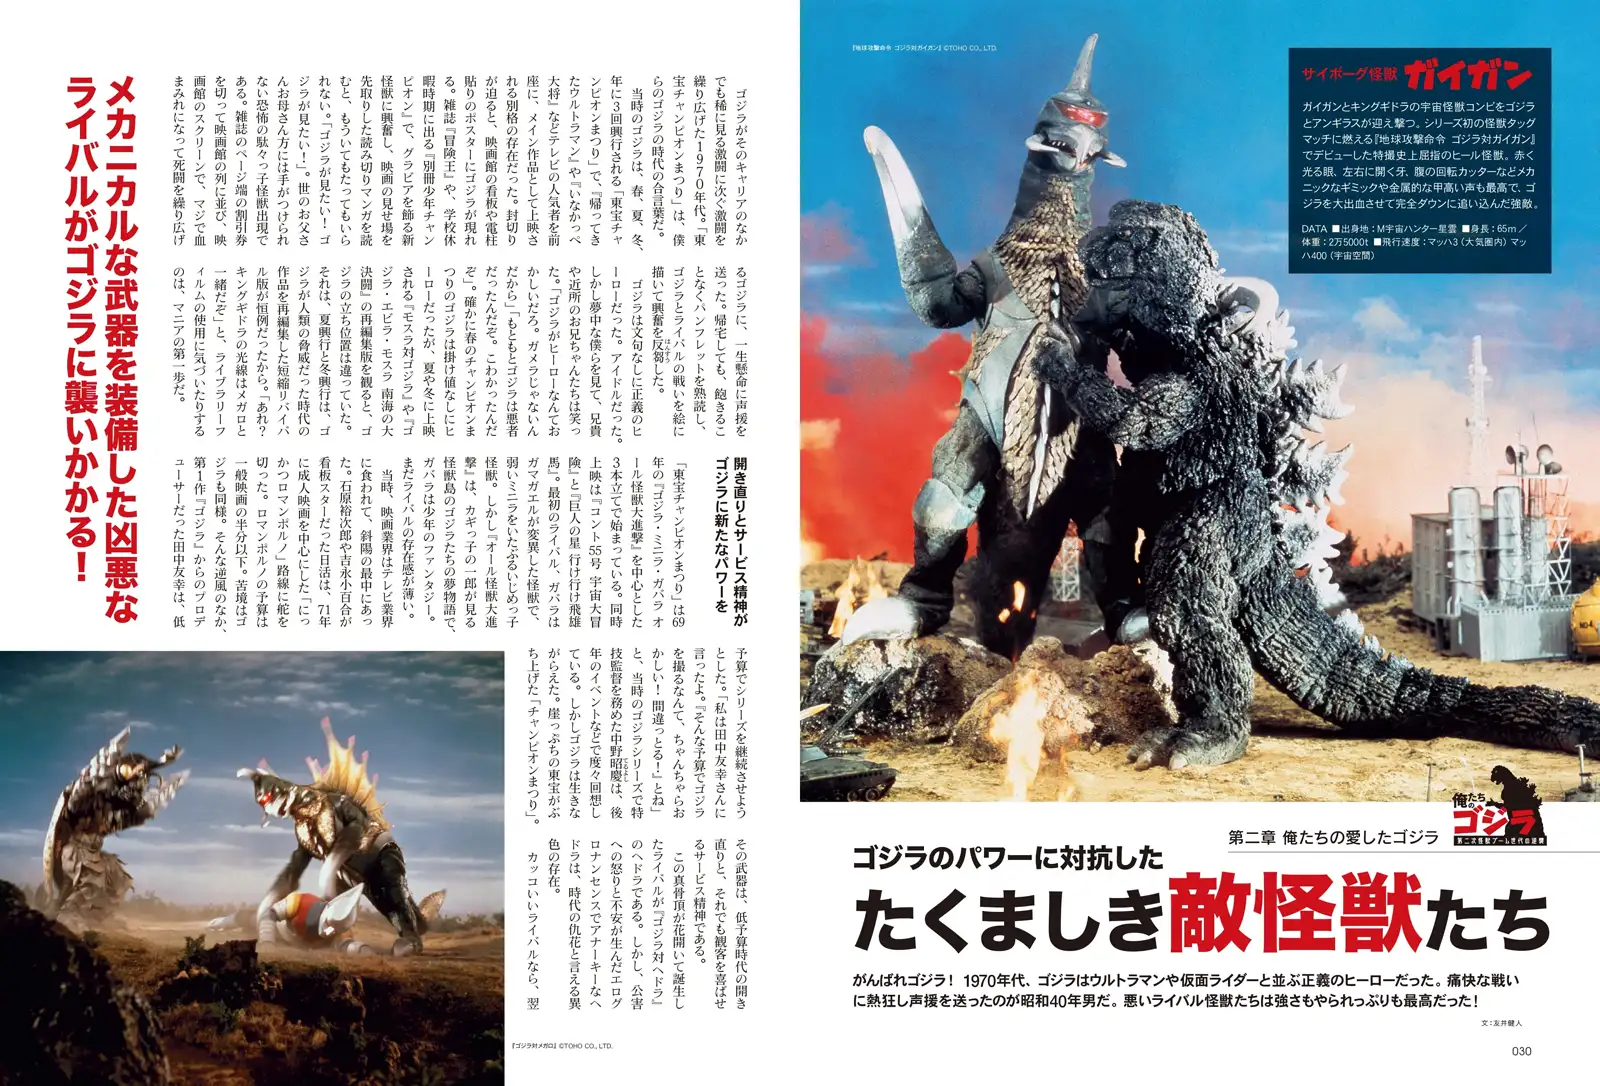 Tough enemy monsters for Godzilla – MyKaiju®